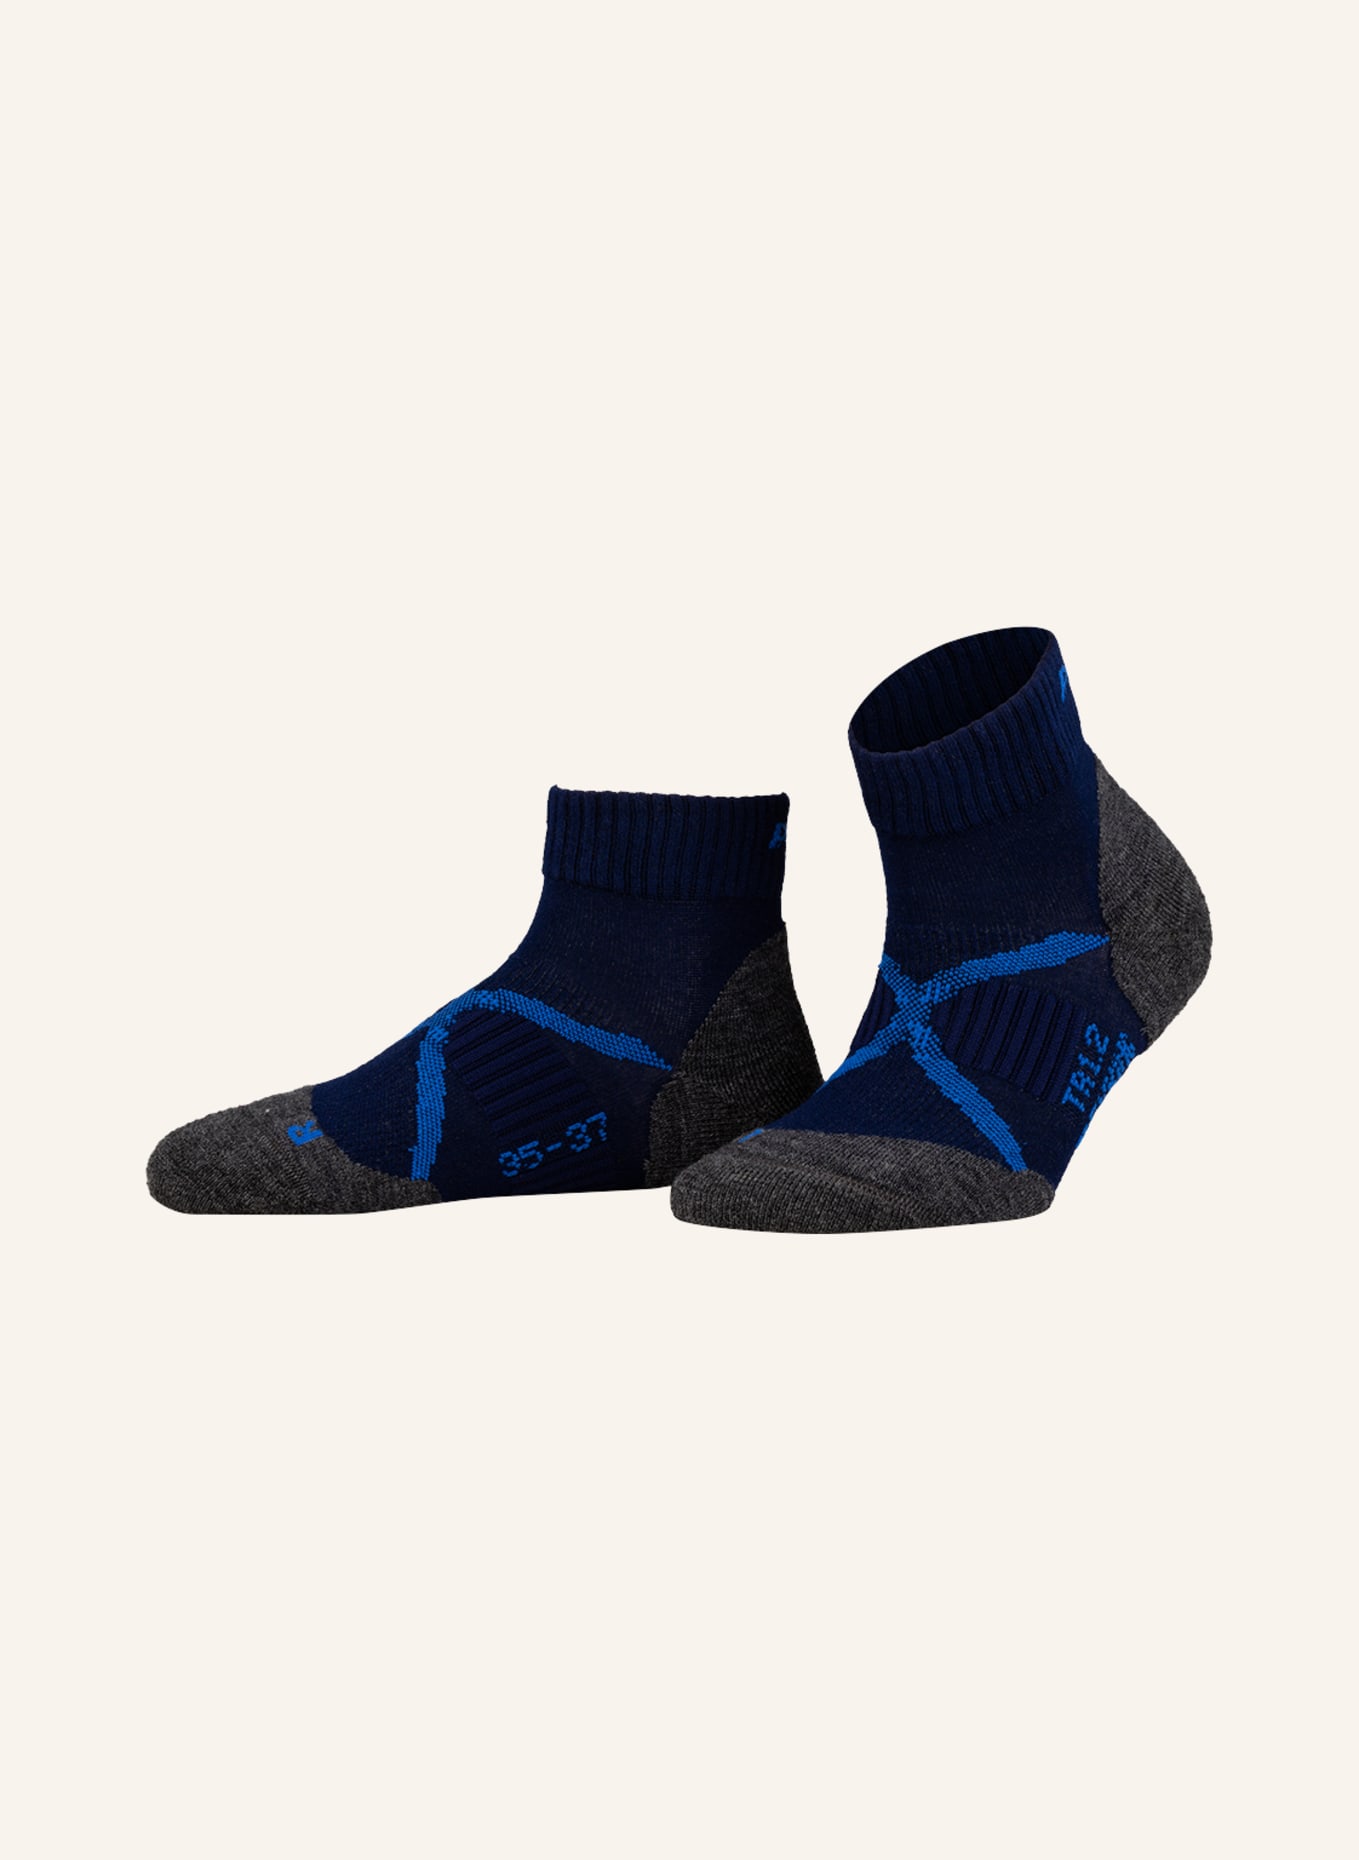 P.A.C. Trekking-Socken TR 1.2 MERINO SHORT COOL, Farbe: NAVY (Bild 1)